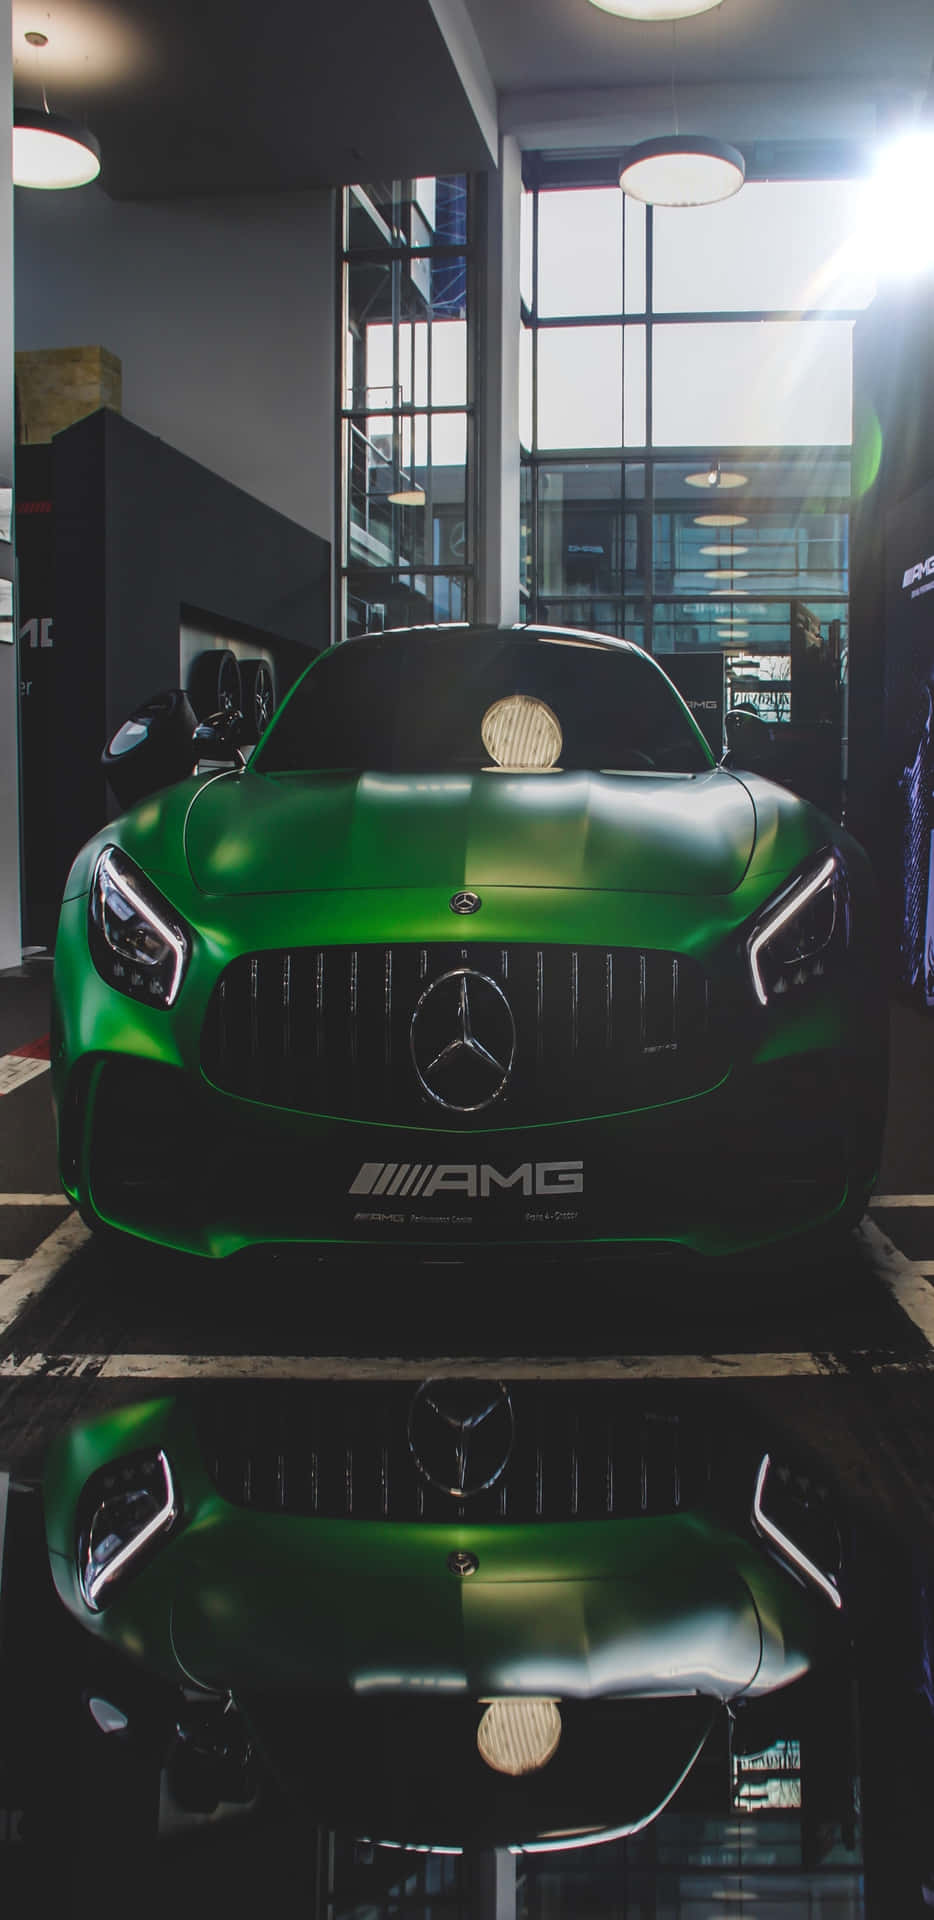 Fondode Pantalla De Pixel 3xl Amg Gt-r En El Interior De Un Concesionario De Mercedes-benz Verde.